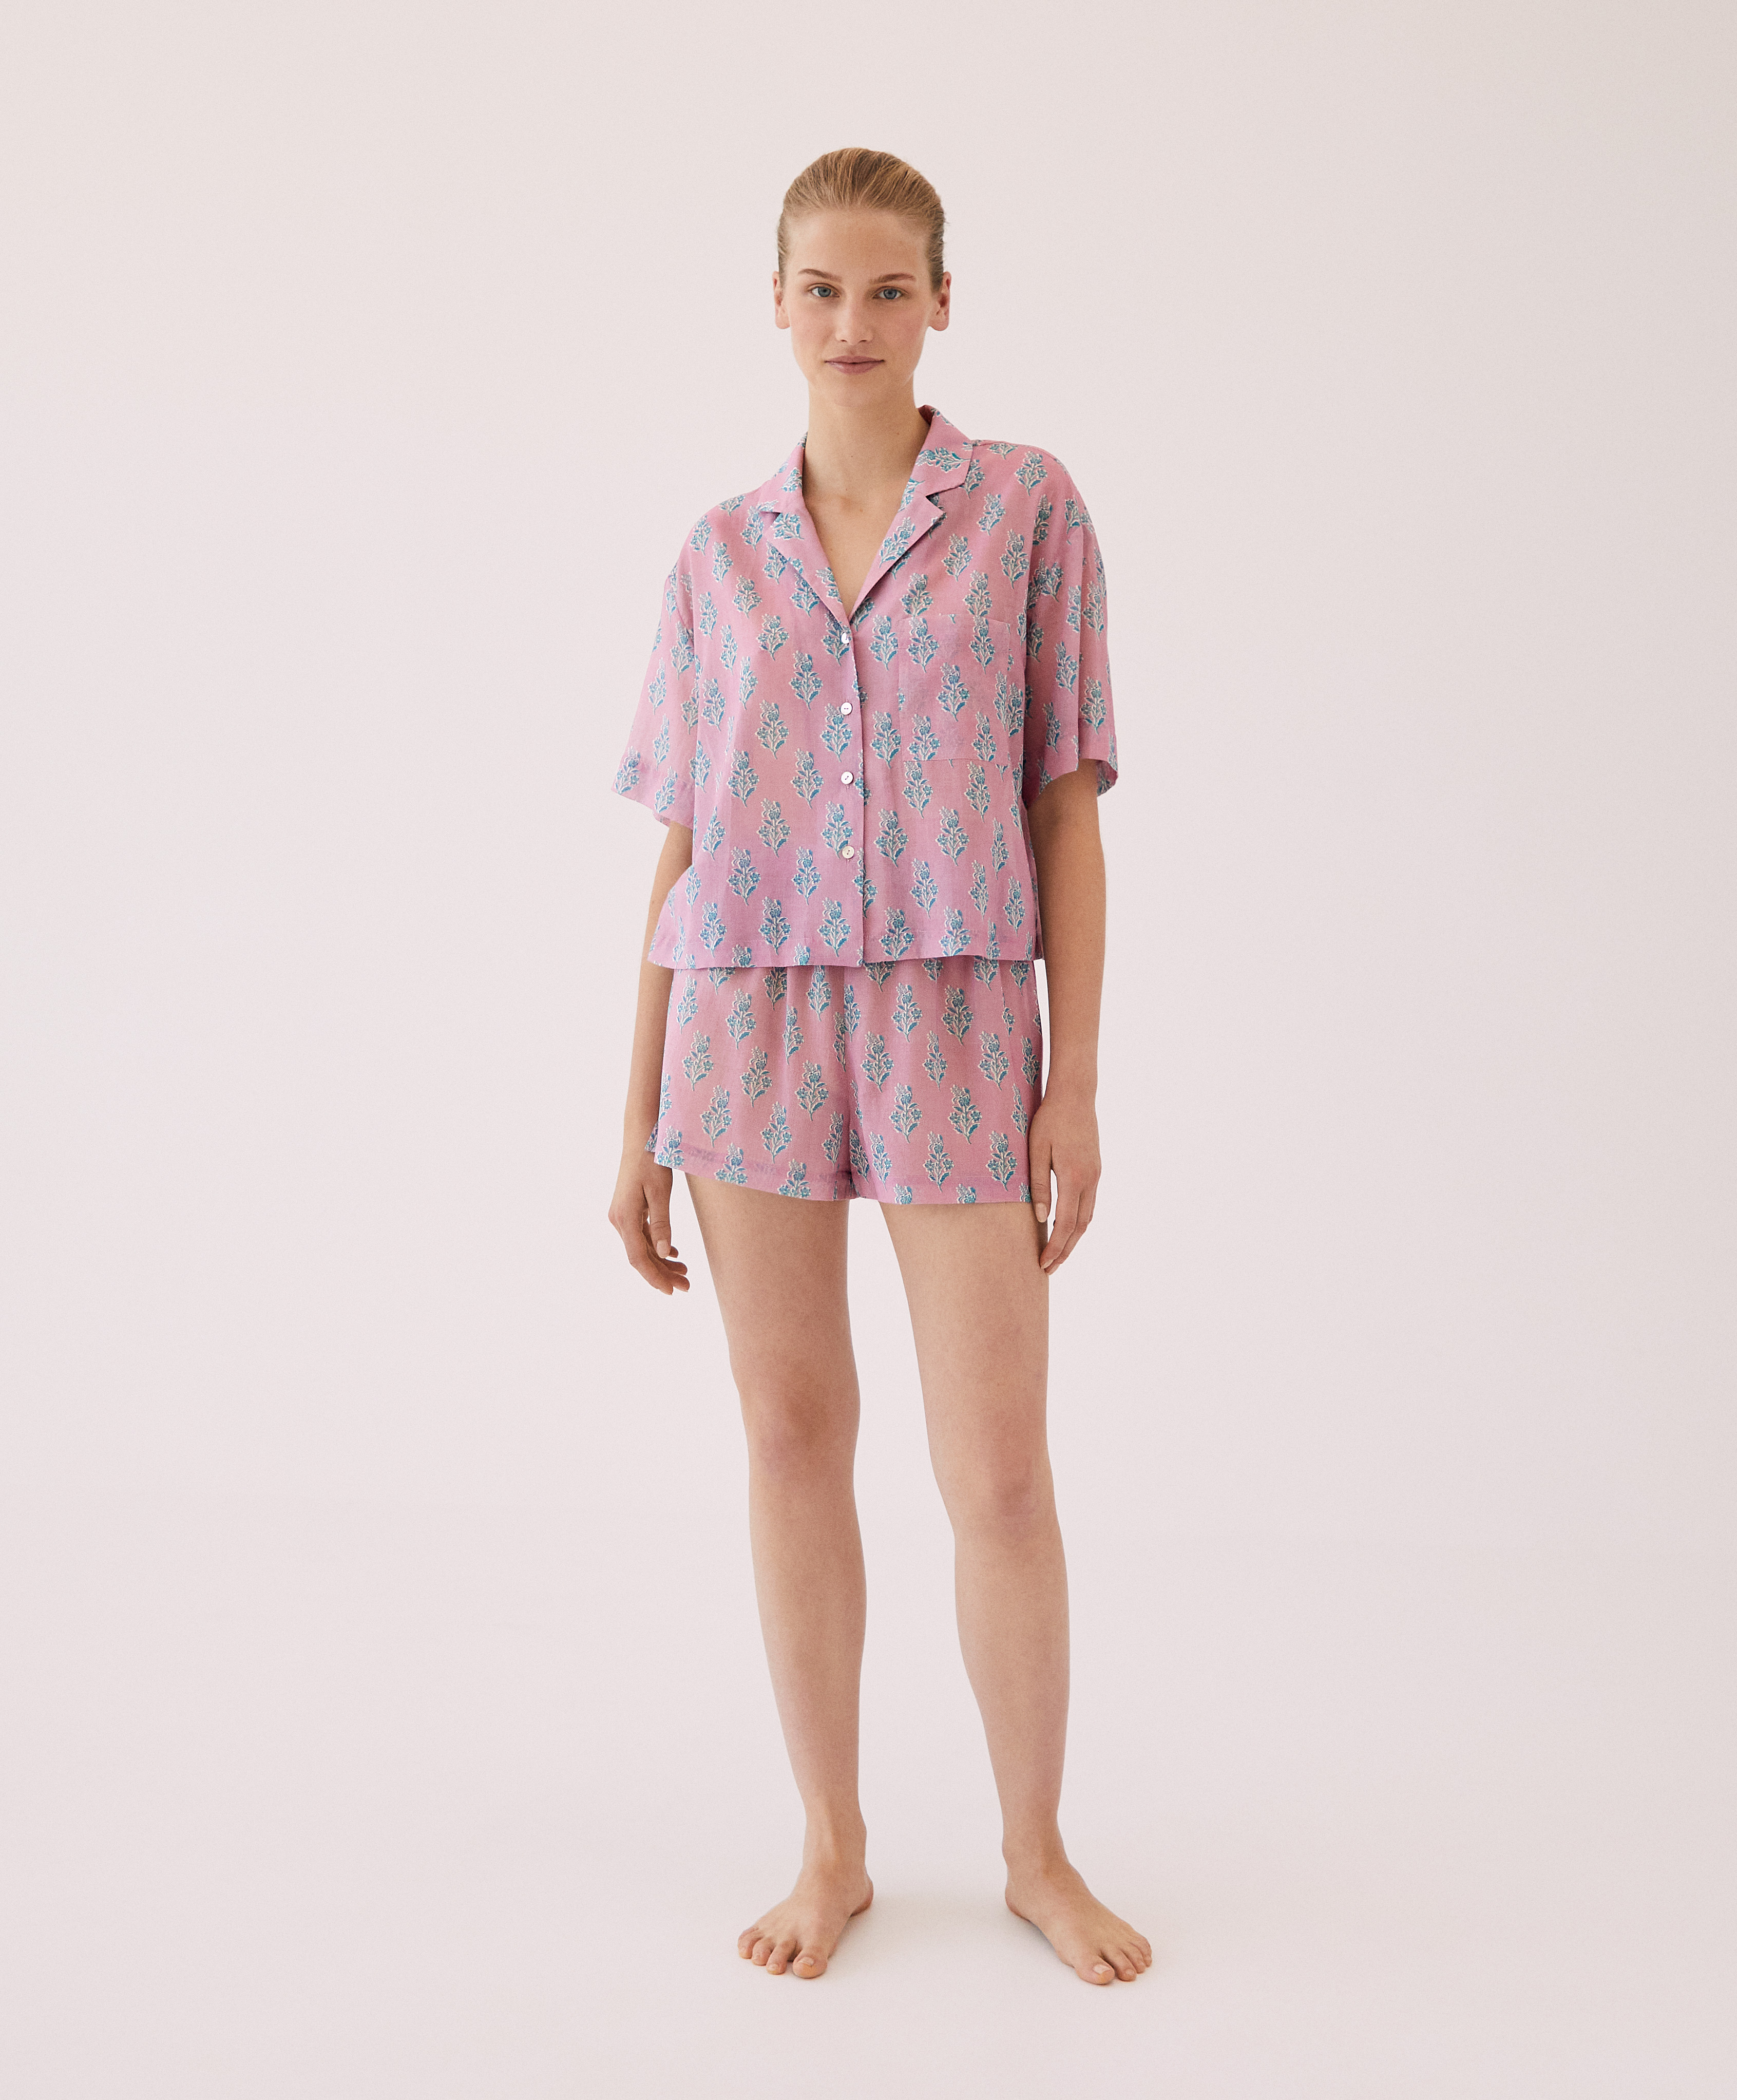 Zweiteiliger kurzer Hemdpyjama aus Baumwollstoff mit Print